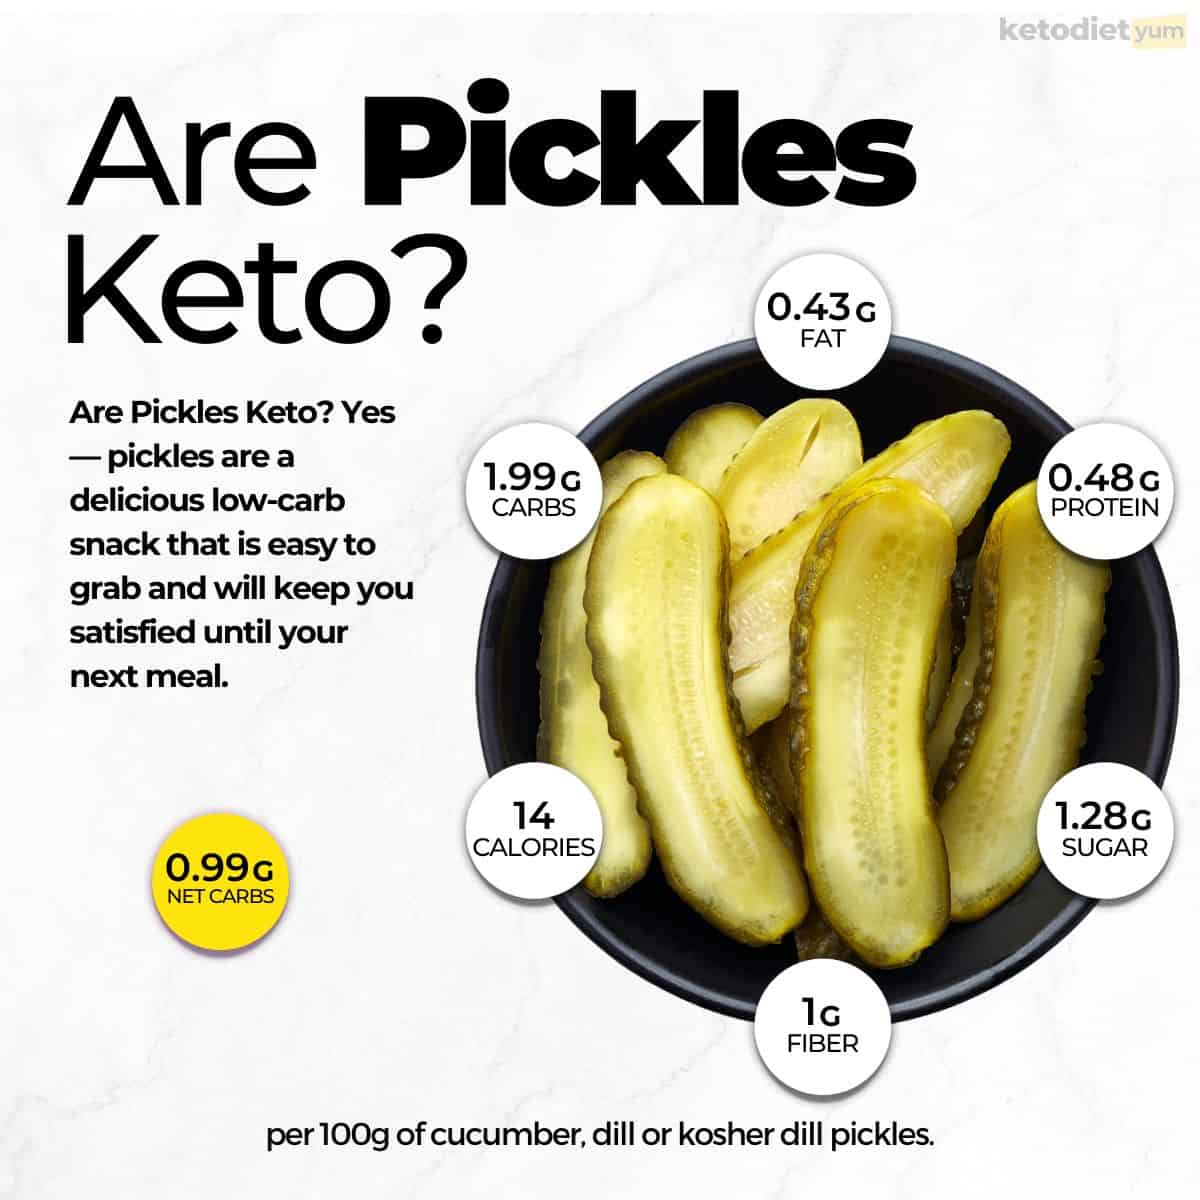 Are Pickles Keto